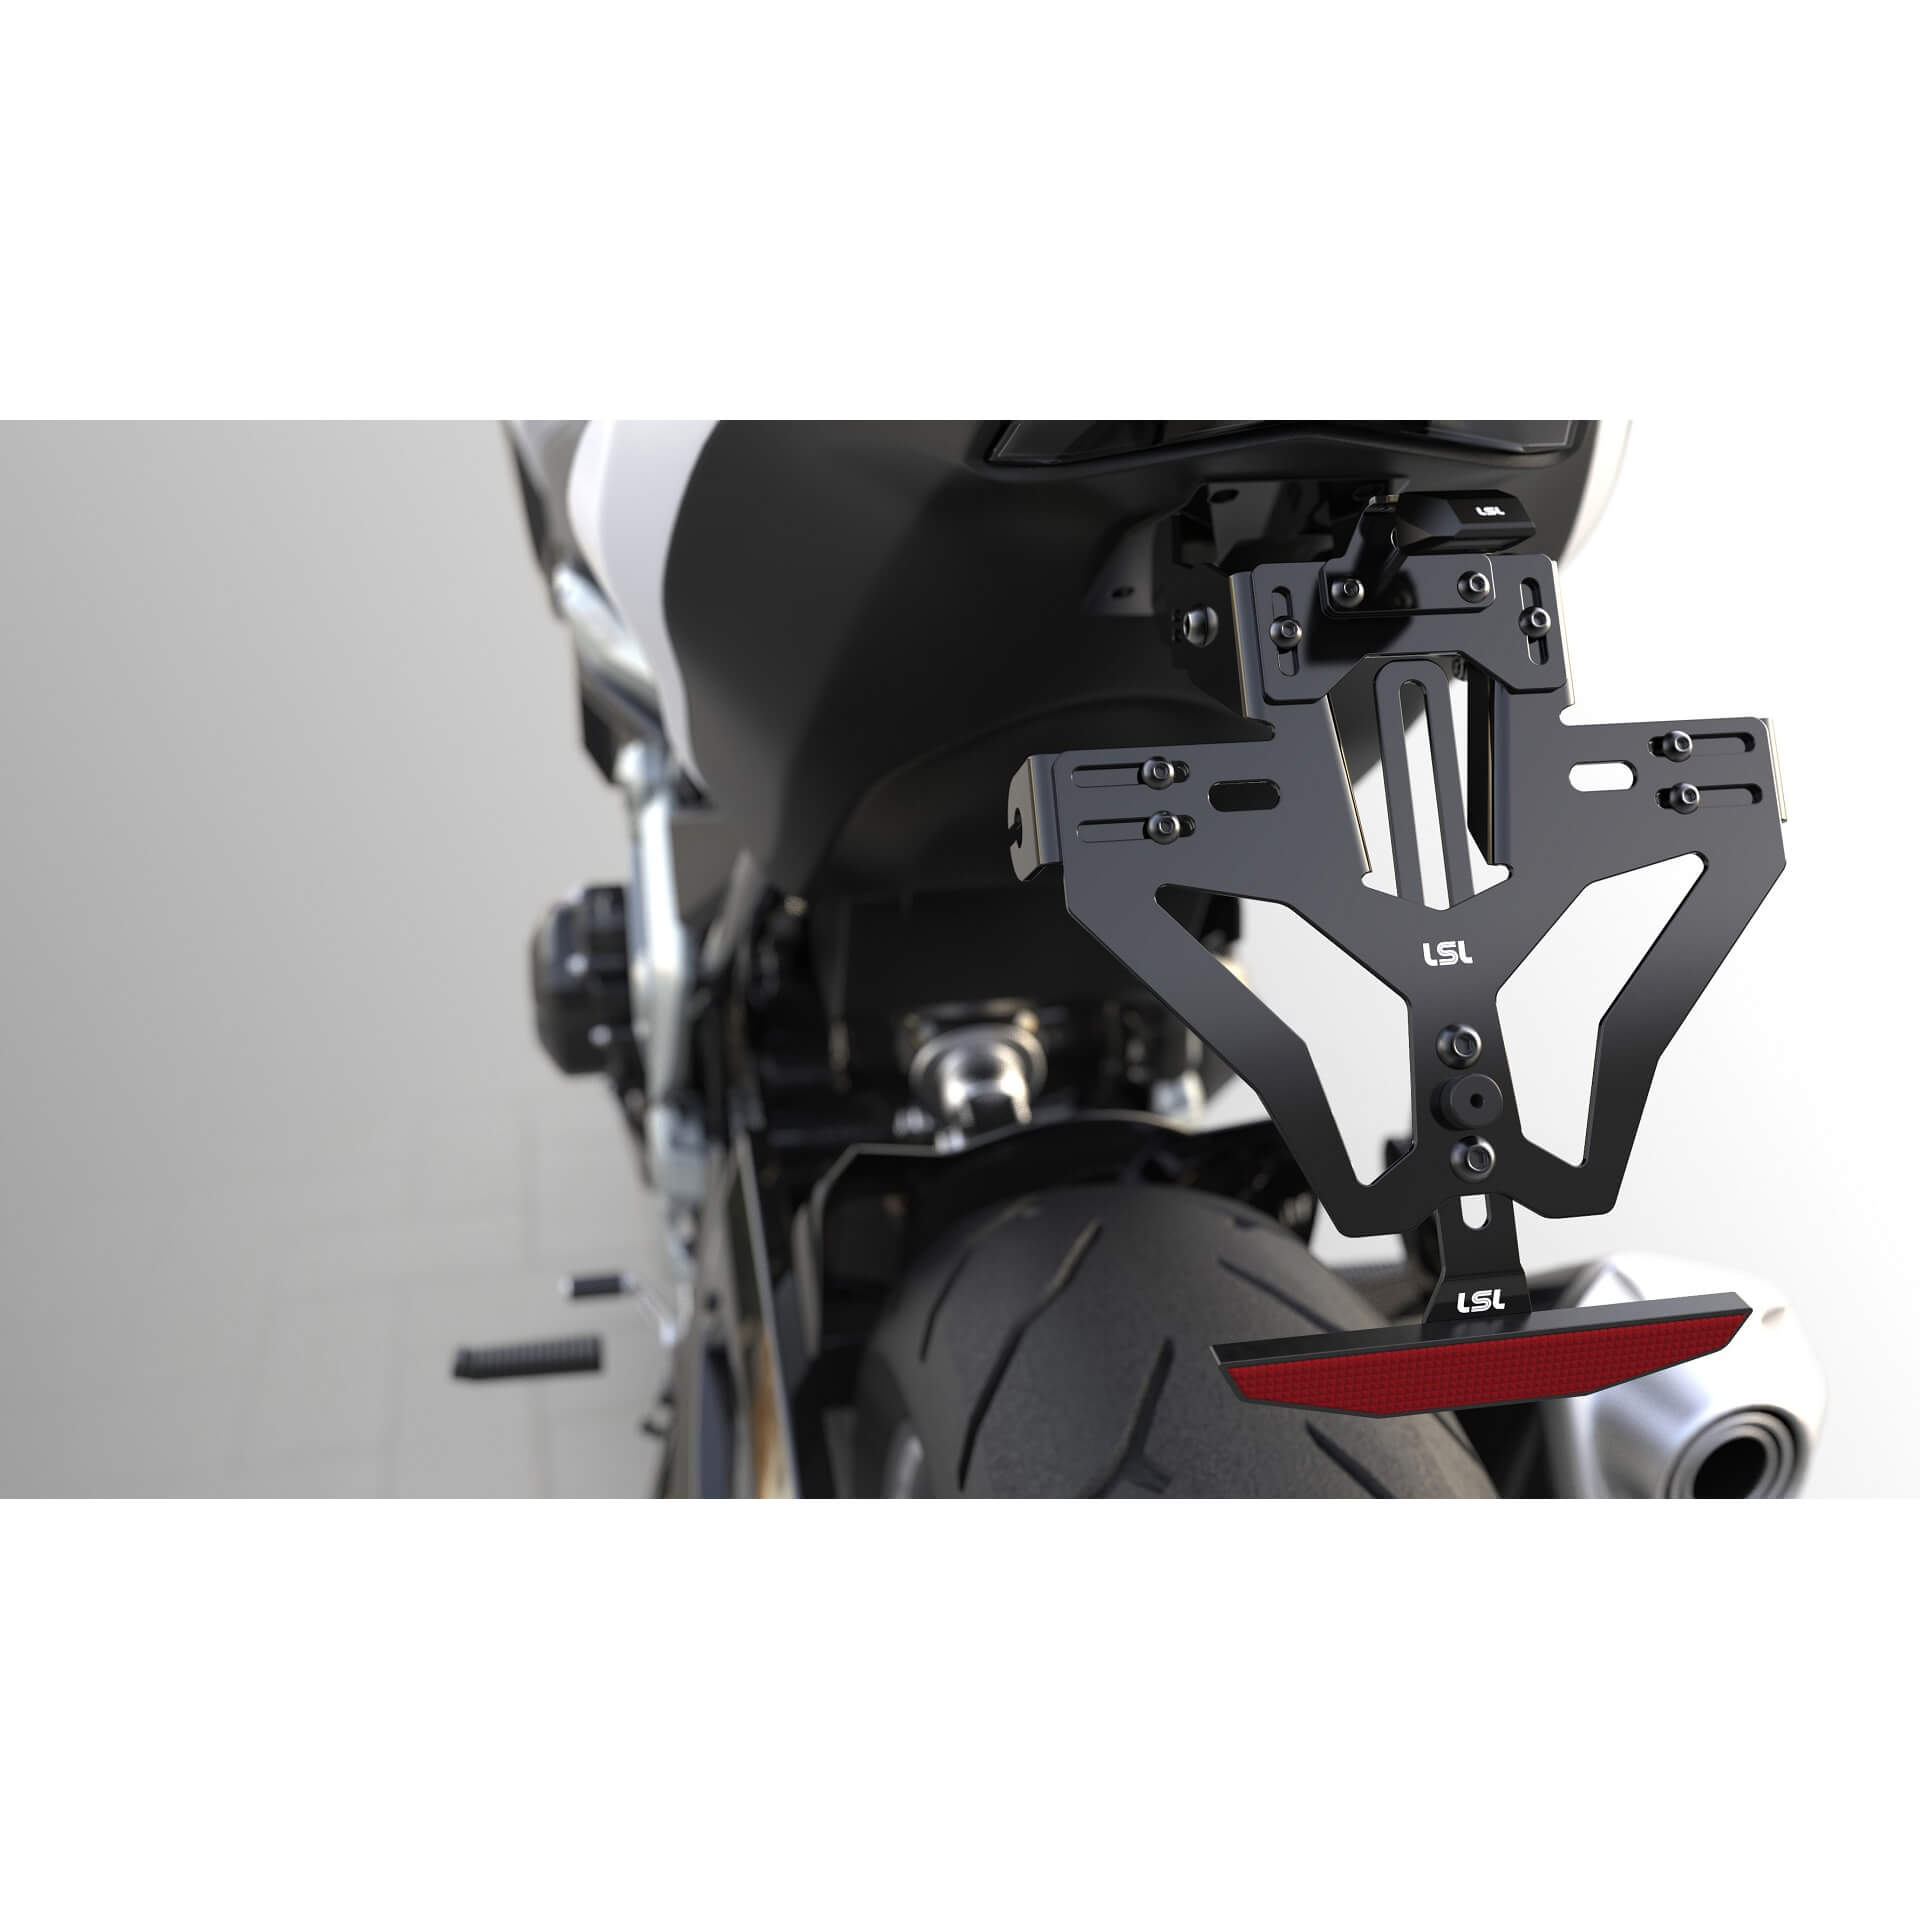 lsl MANTIS-RS PRO für Honda CB 125 R 18-, inkl. Kennzeichenbeleuchtung